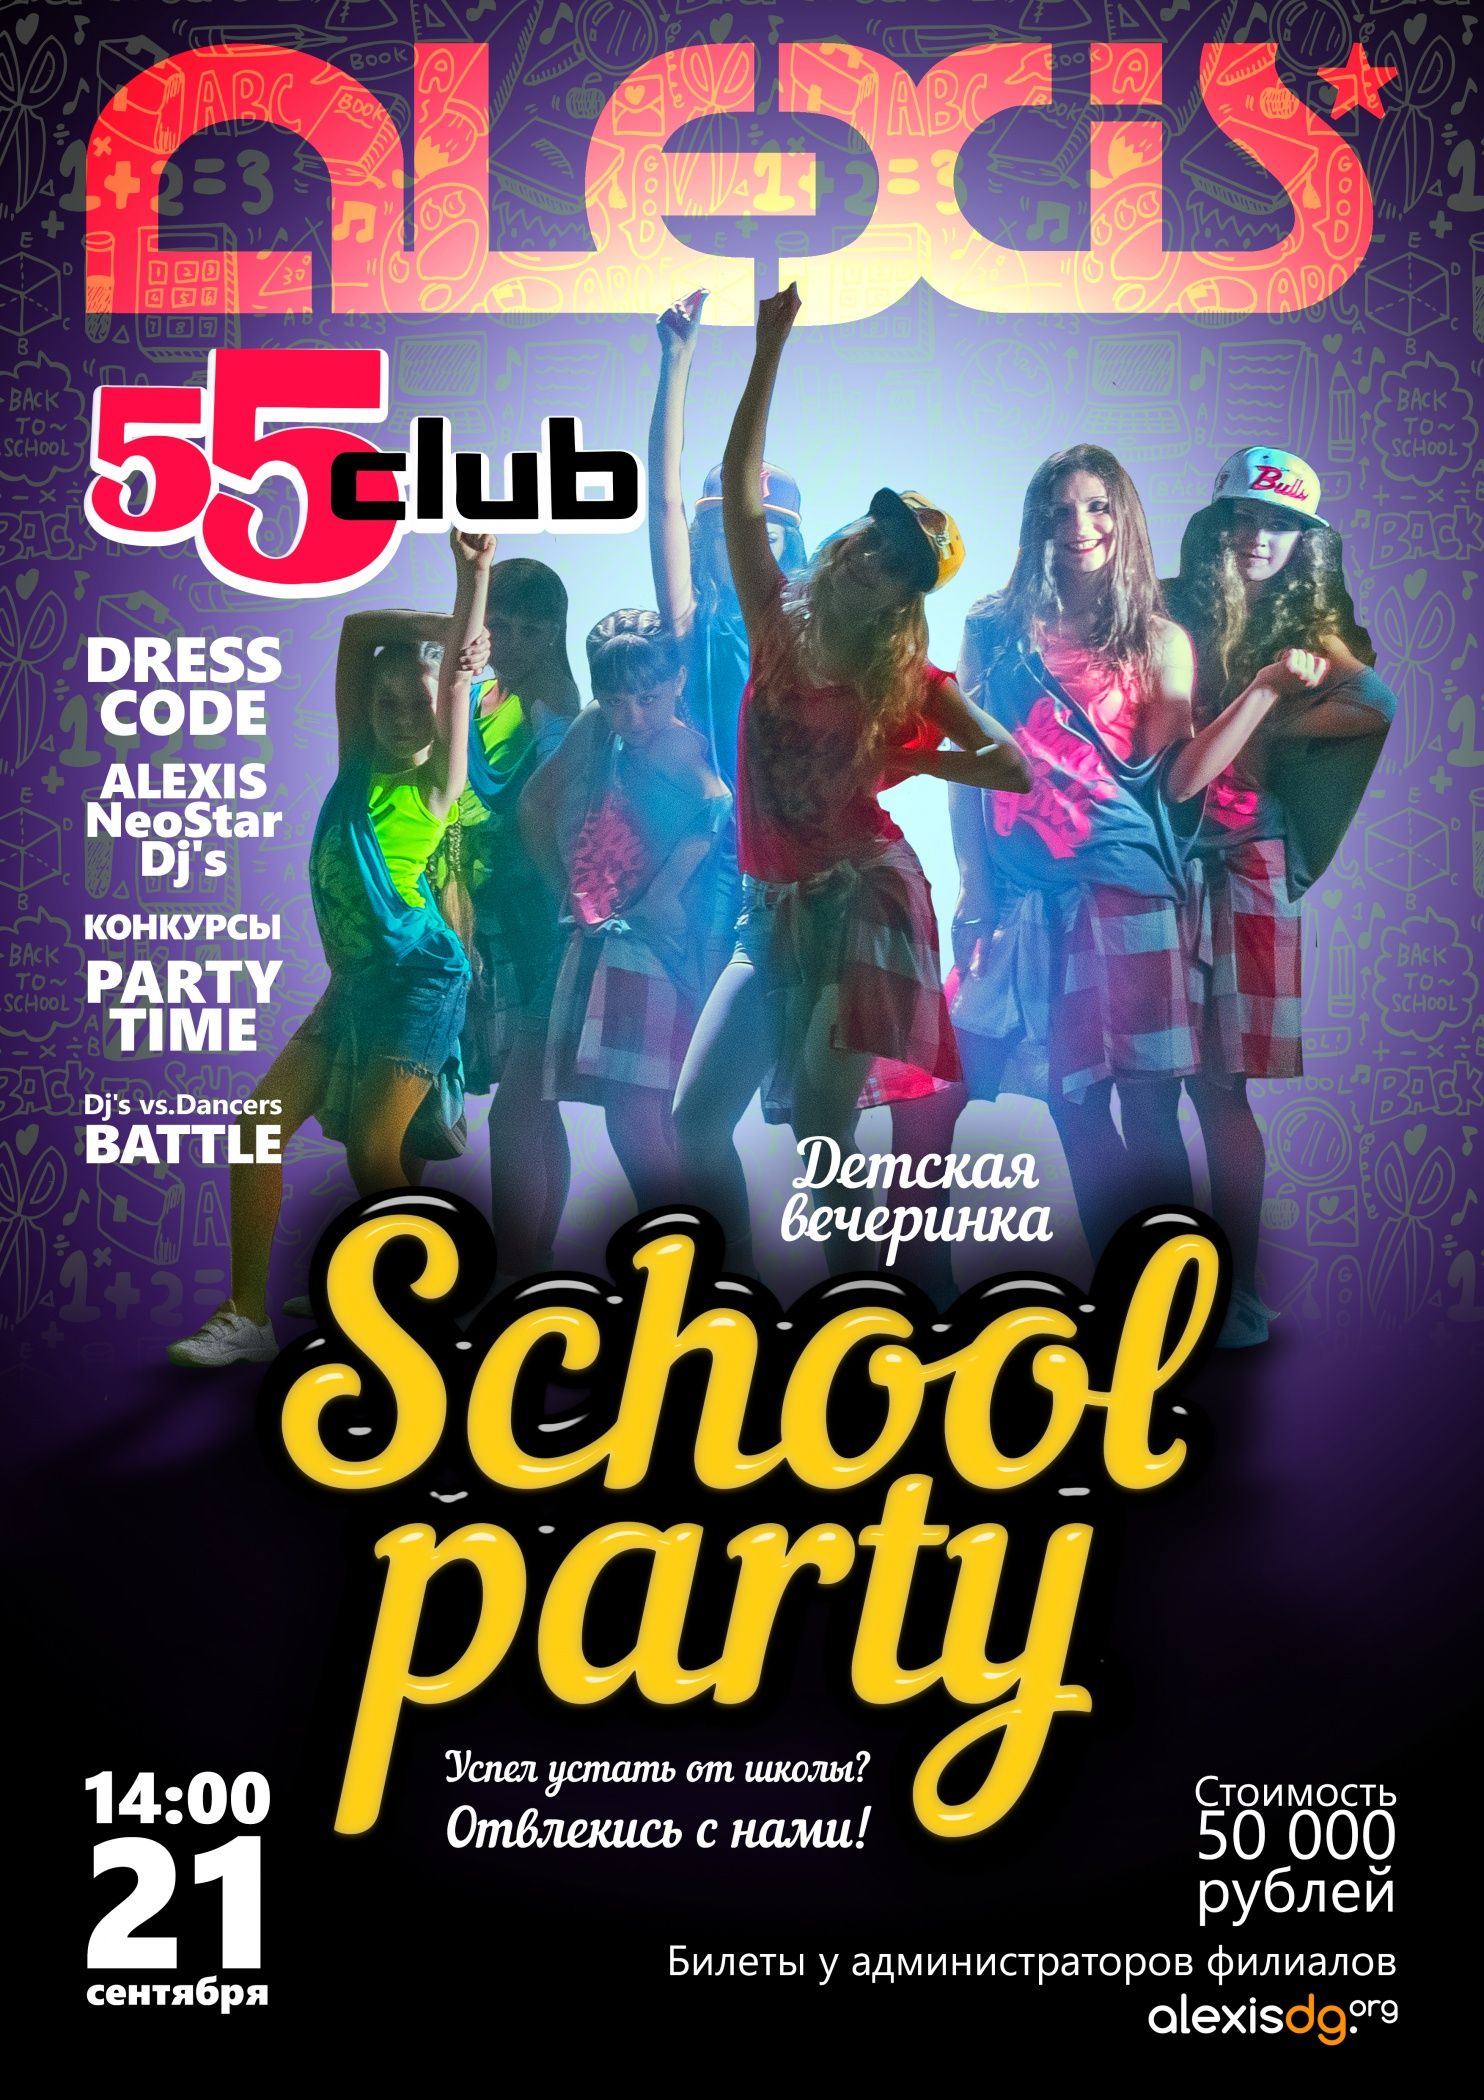 55 club. School Party. 21   14.00